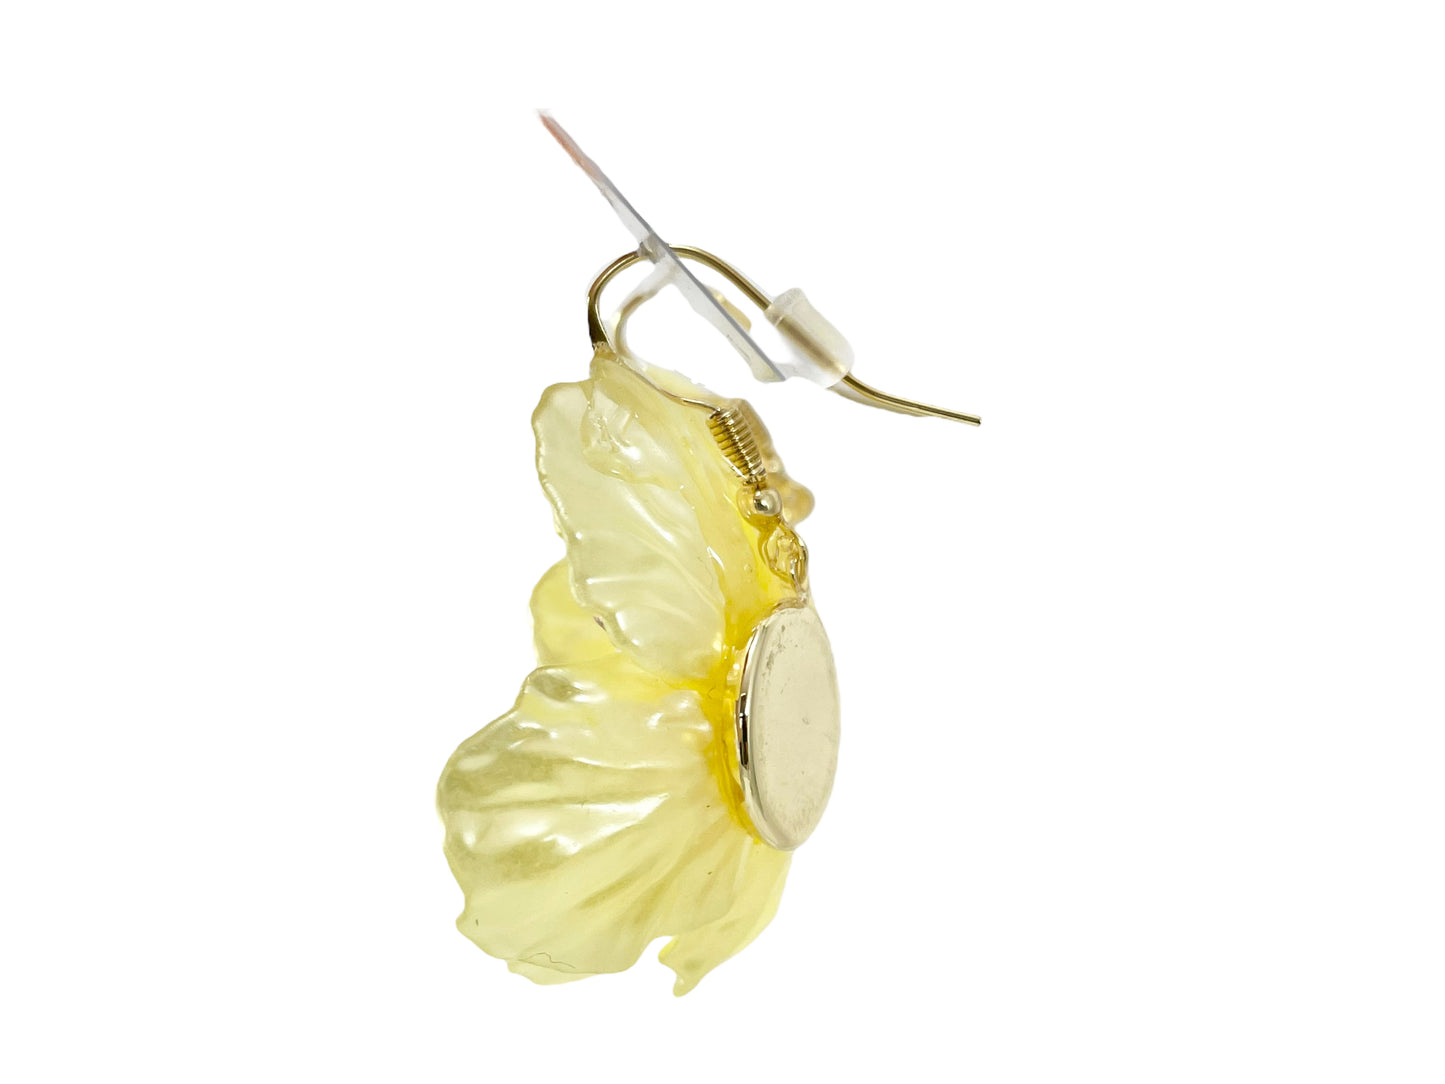 Hand beaded earrings - flower white -